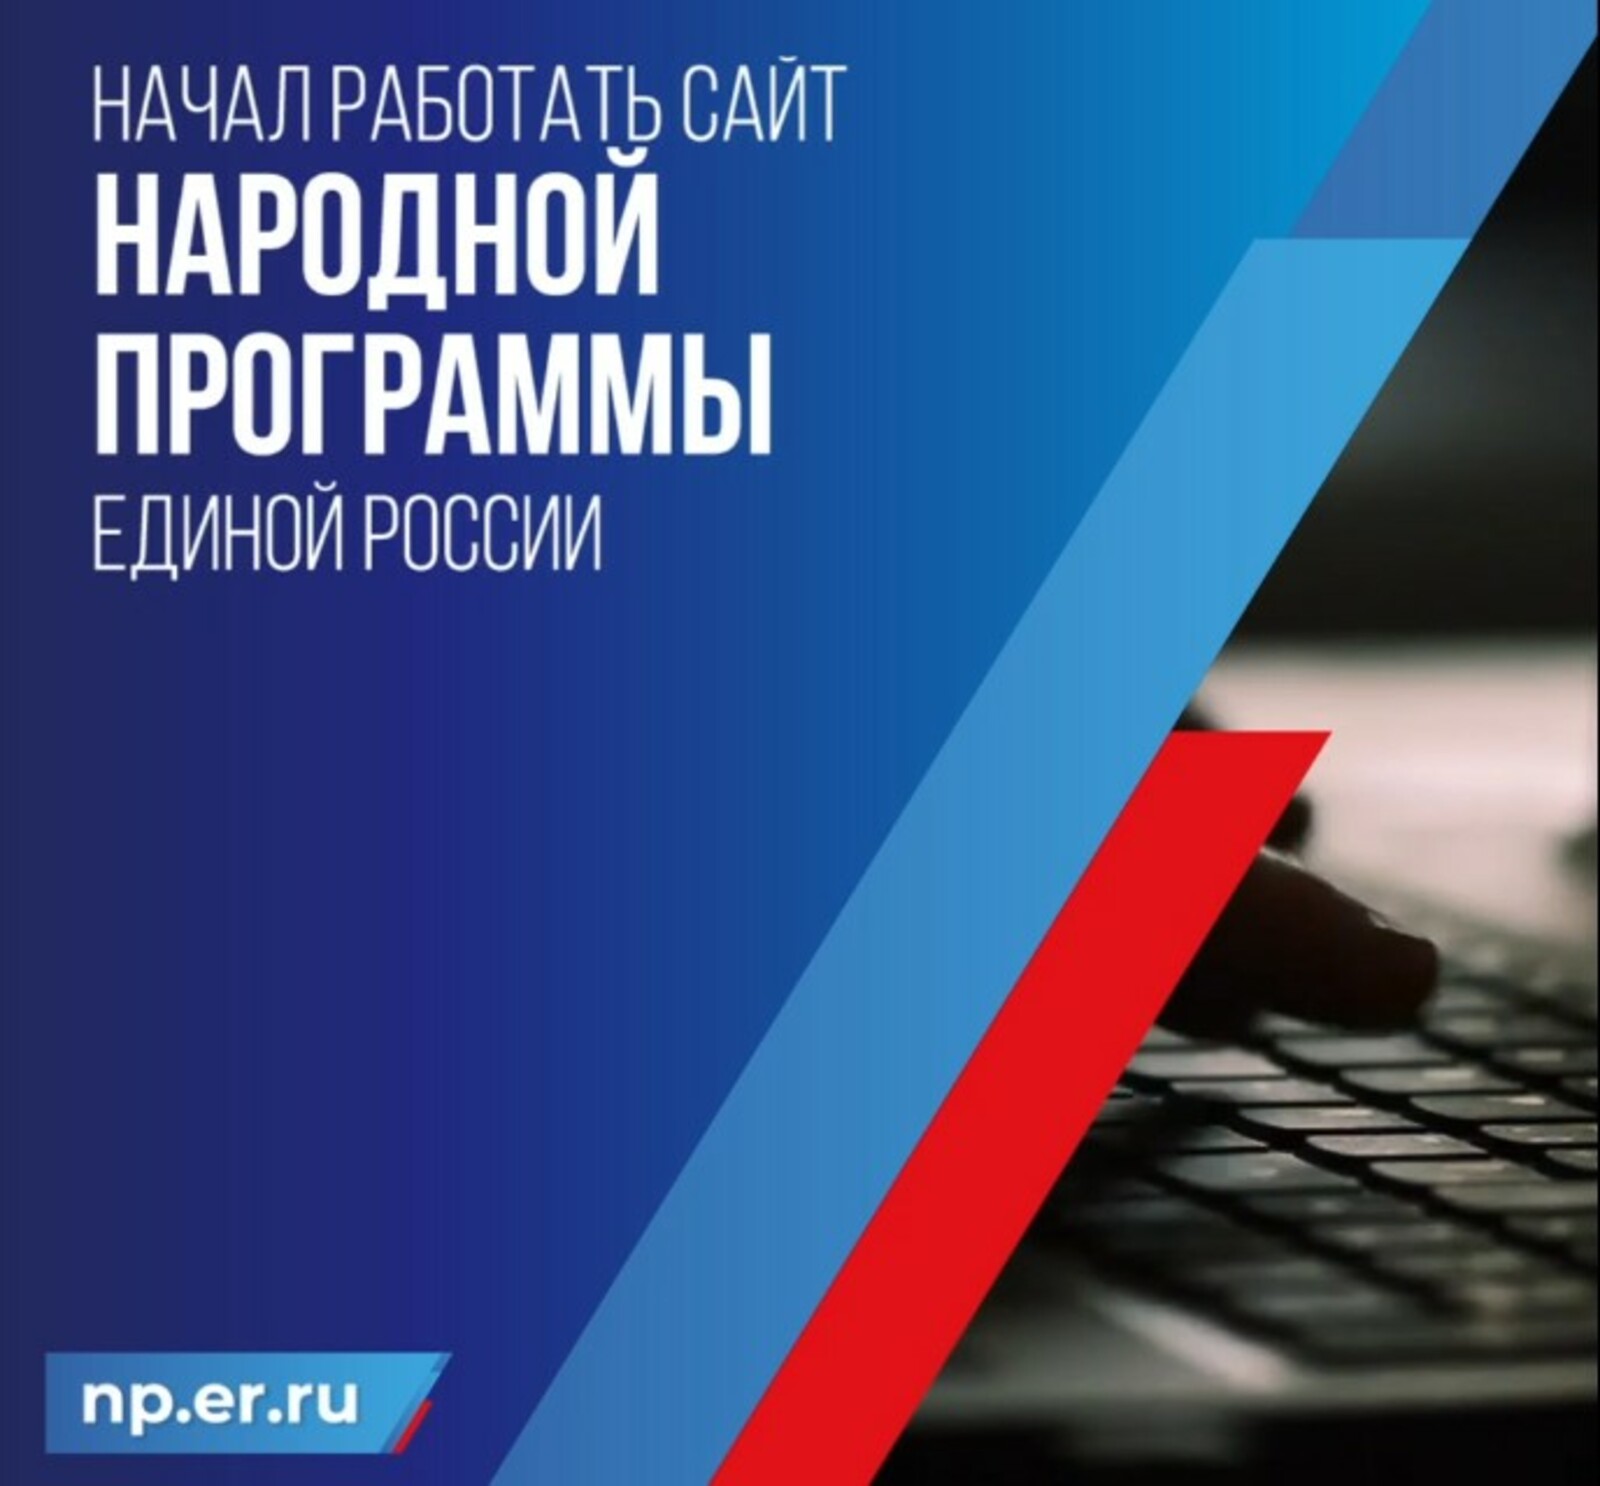 Единая Россия запустила интернет-портал для сбора предложений в народную программу NP.ER.RU